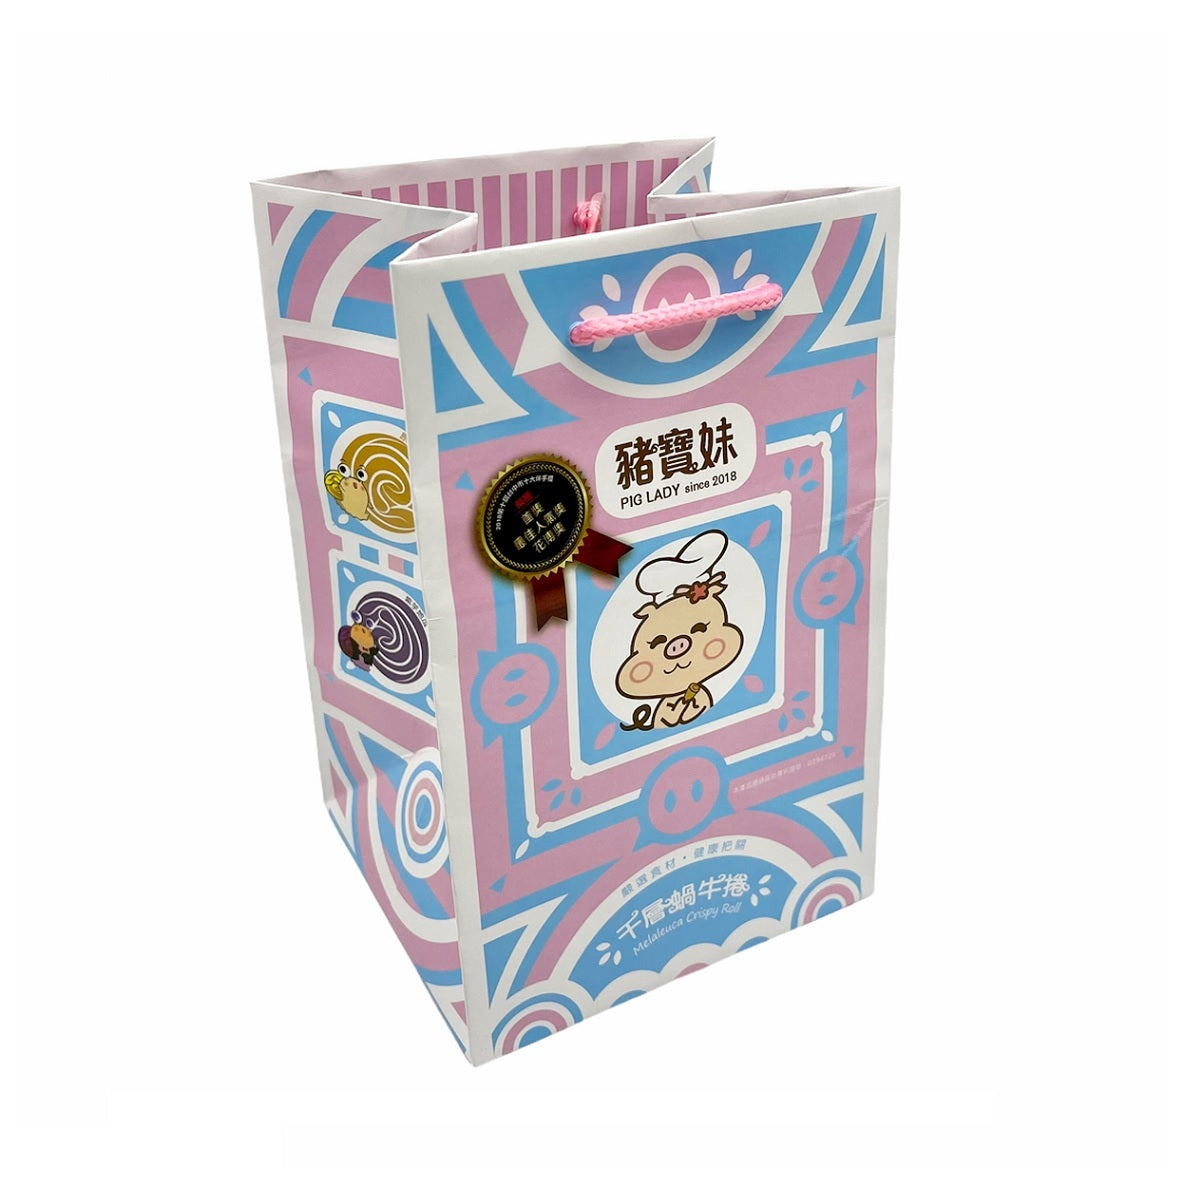 豬寶妹 PIG LADY 蝸牛捲-綜合四口味 (原味.芝麻.伯爵紅茶.紫芋地瓜) 384g